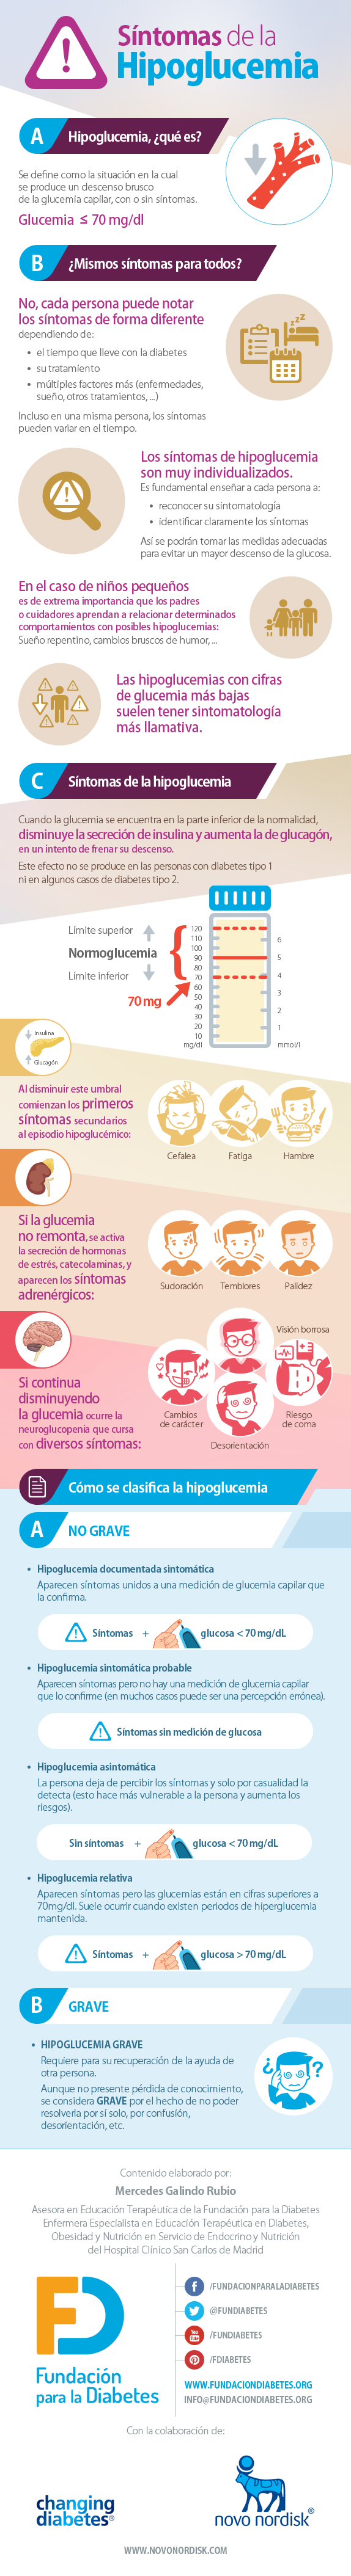 Infografía Síntomas de la Hipoglucemia